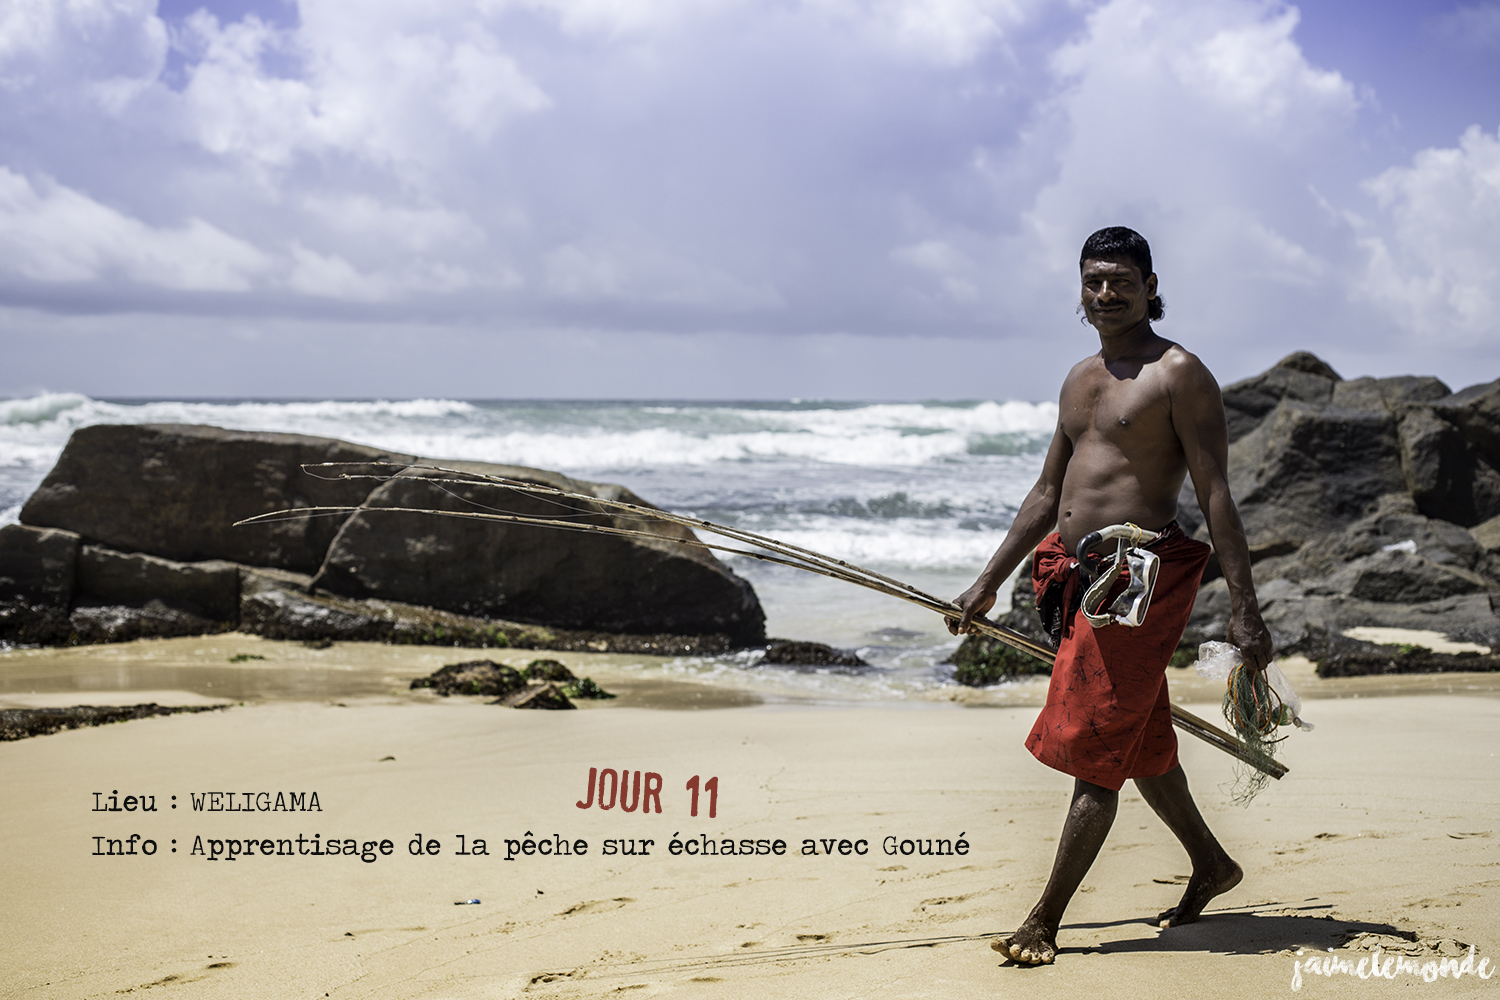 Voyage Sri Lanka - Itinéraire Jour 11 - 2 Weligama - Apprentissage de la pêche sur échasse - ©jaimelemonde